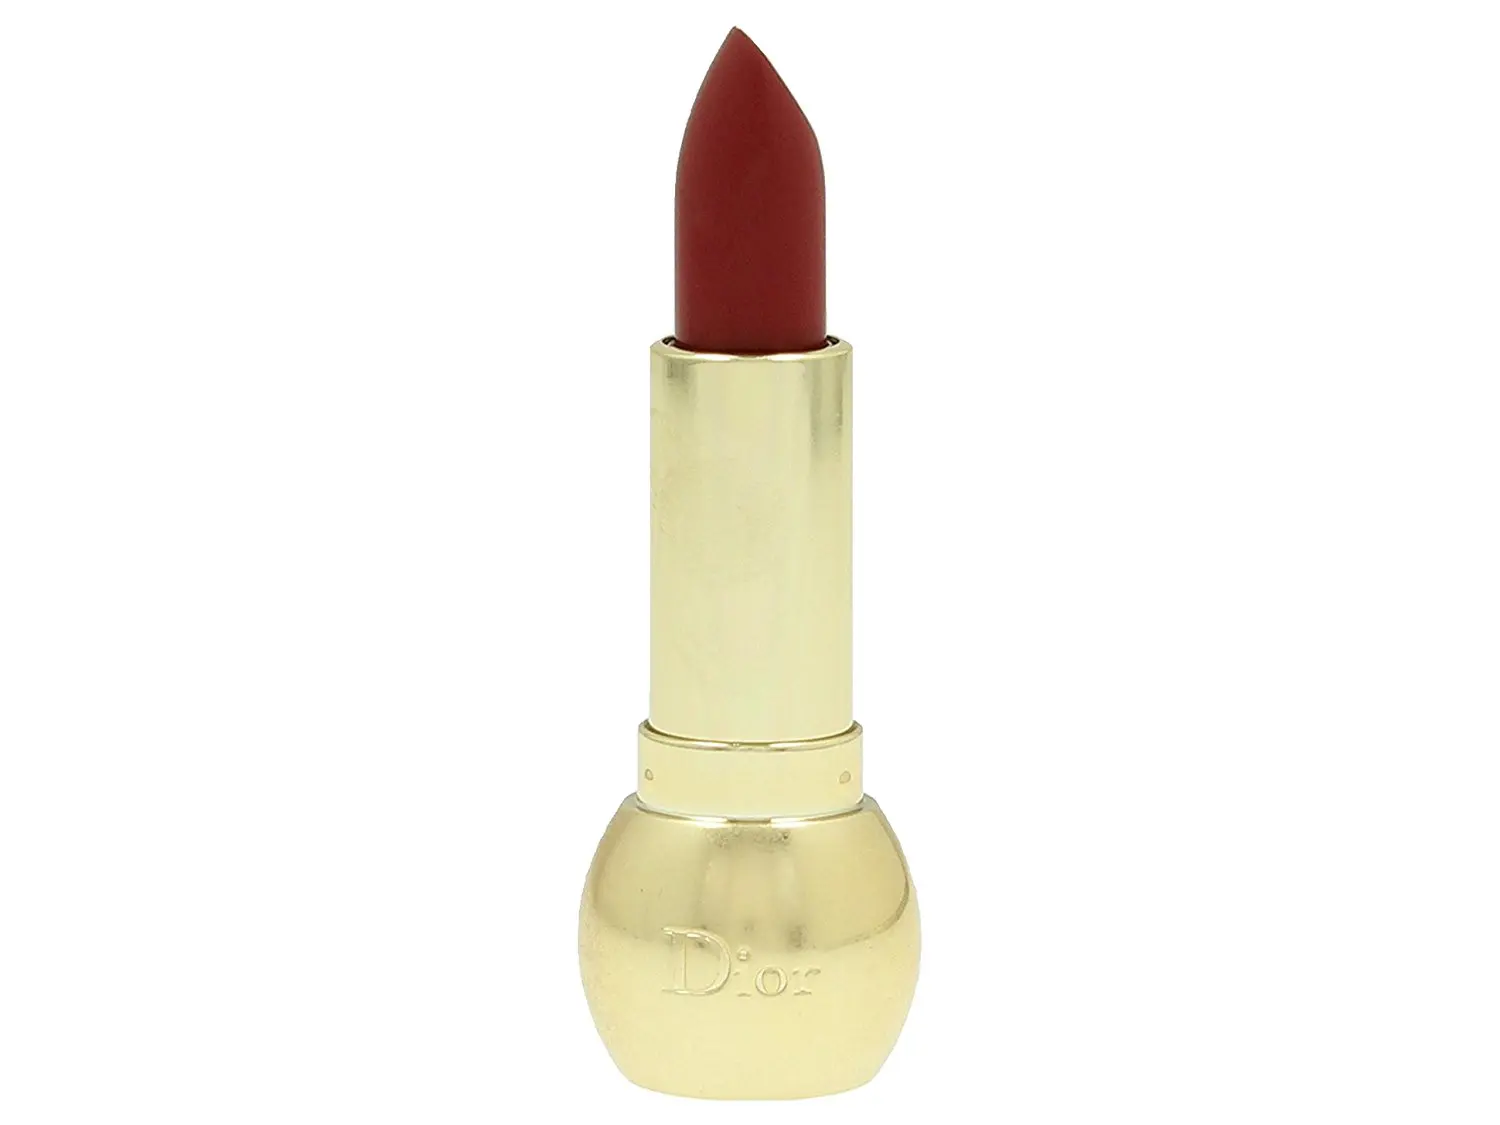 dior rouge diorific true color lipstick